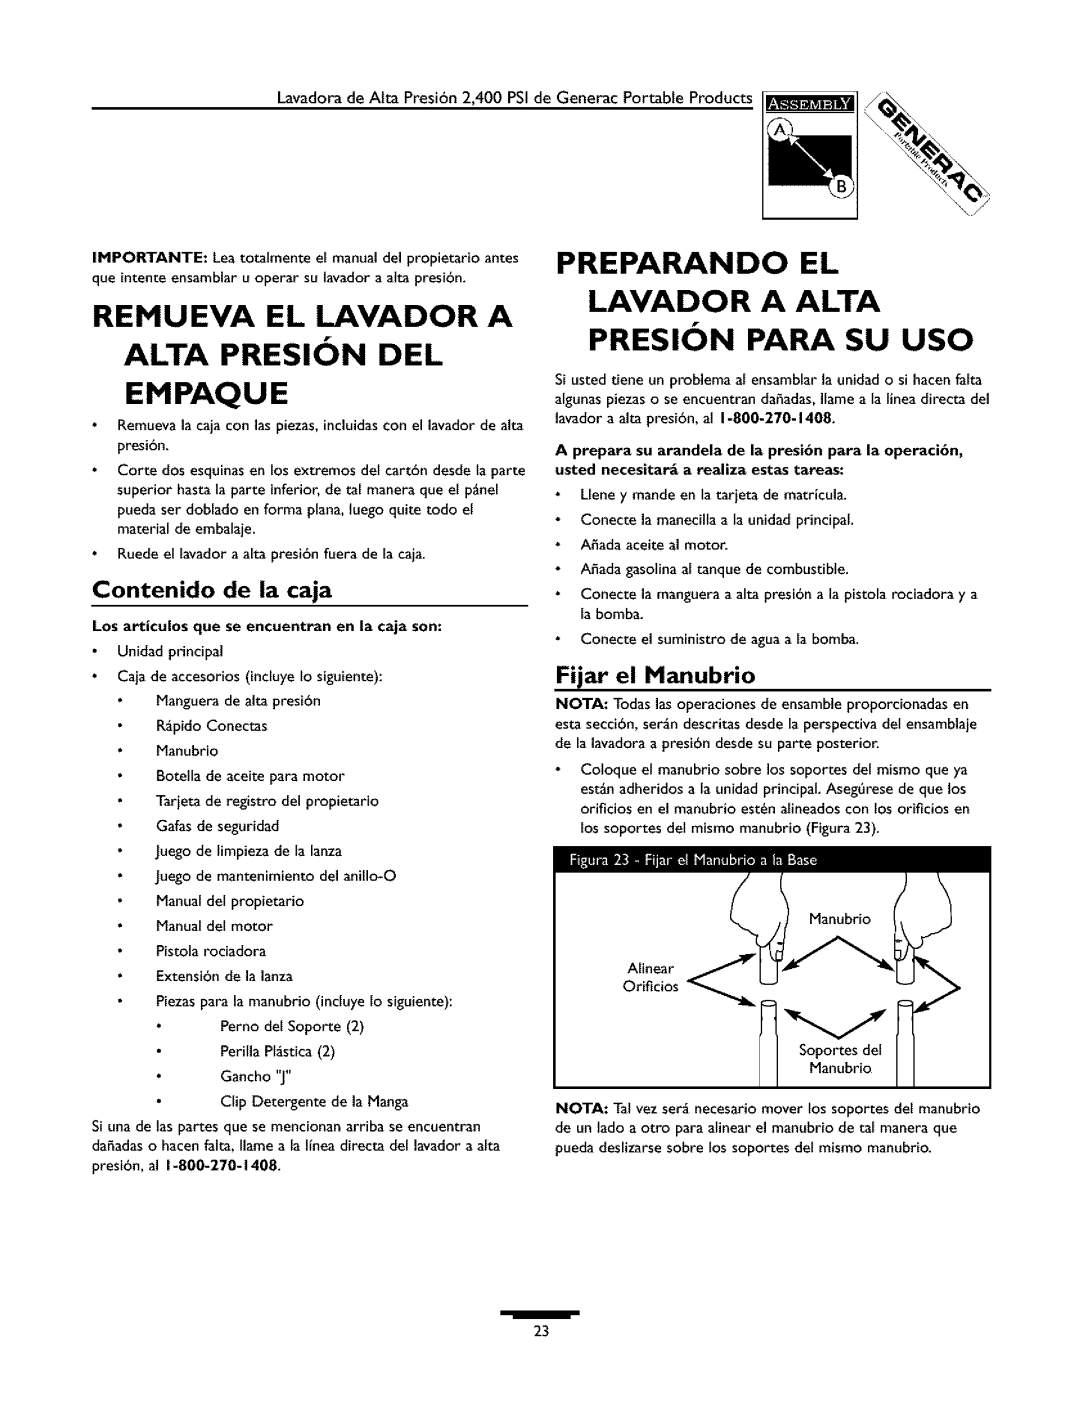 Generac 1537-0 owner manual Preparando, Remueva El Lavador A Alta Presion Del Empaque, Lavador A Alta Presion Para Su Uso 